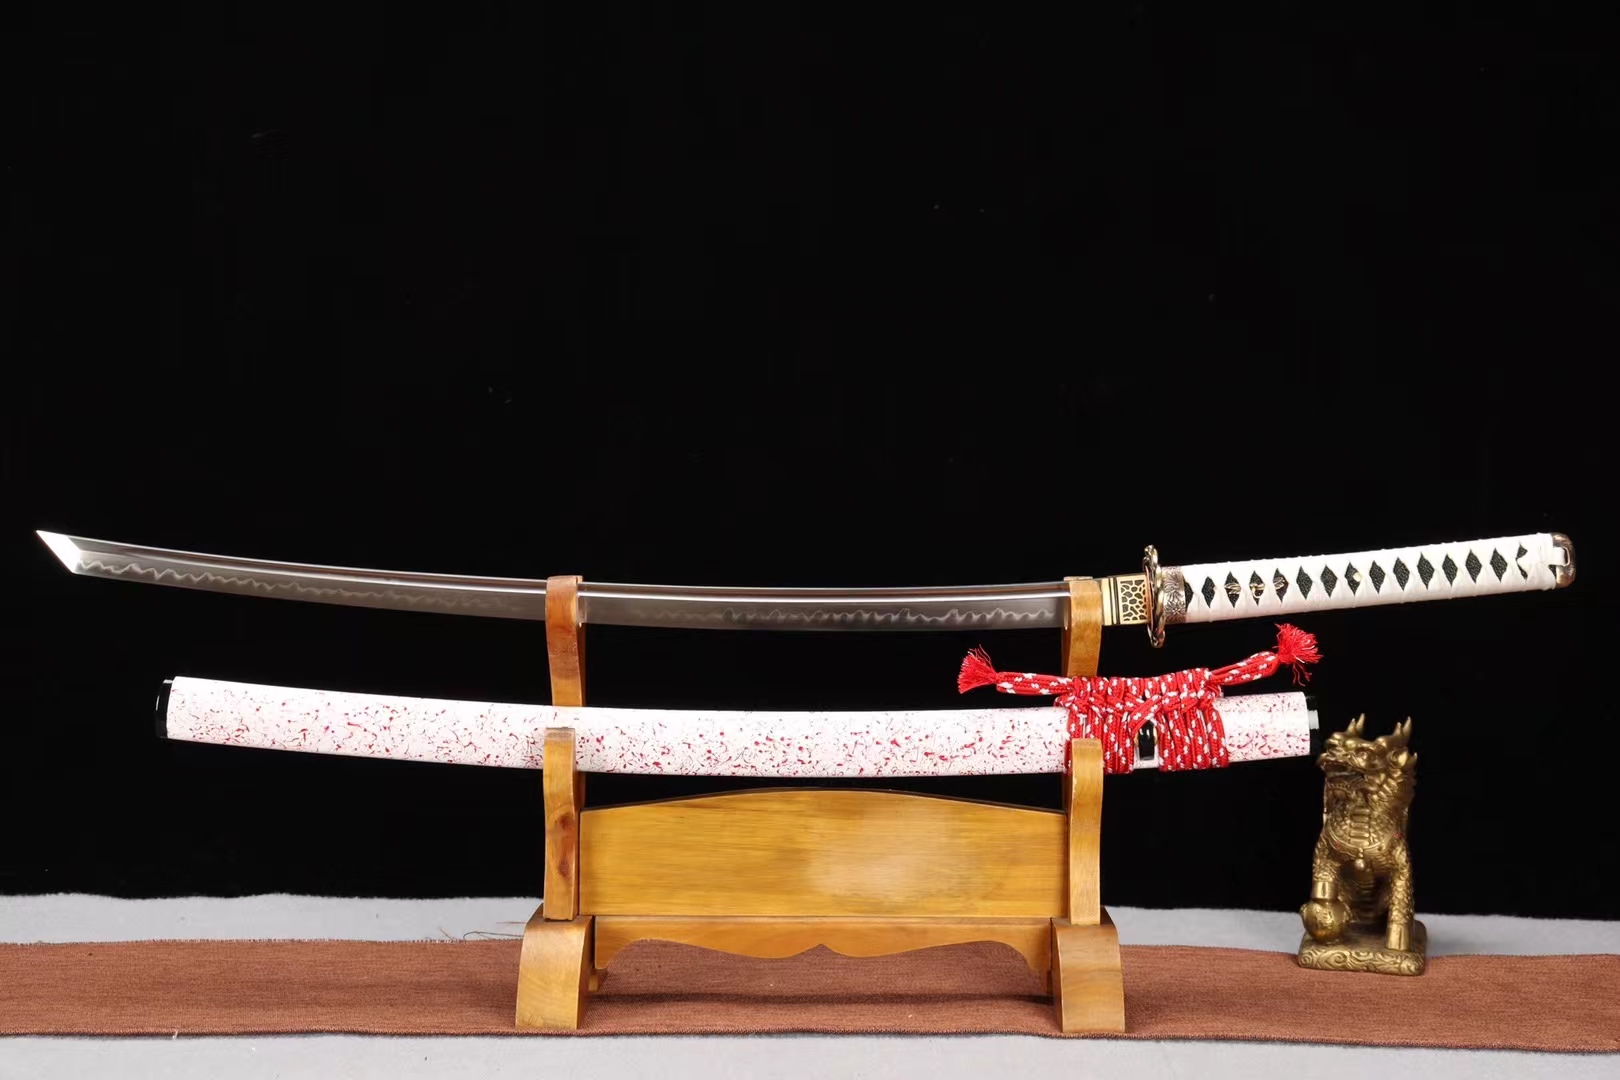 剑道练习竹剑 竹刀 日本剑道竹剑 木质刀剑道具-阿里巴巴